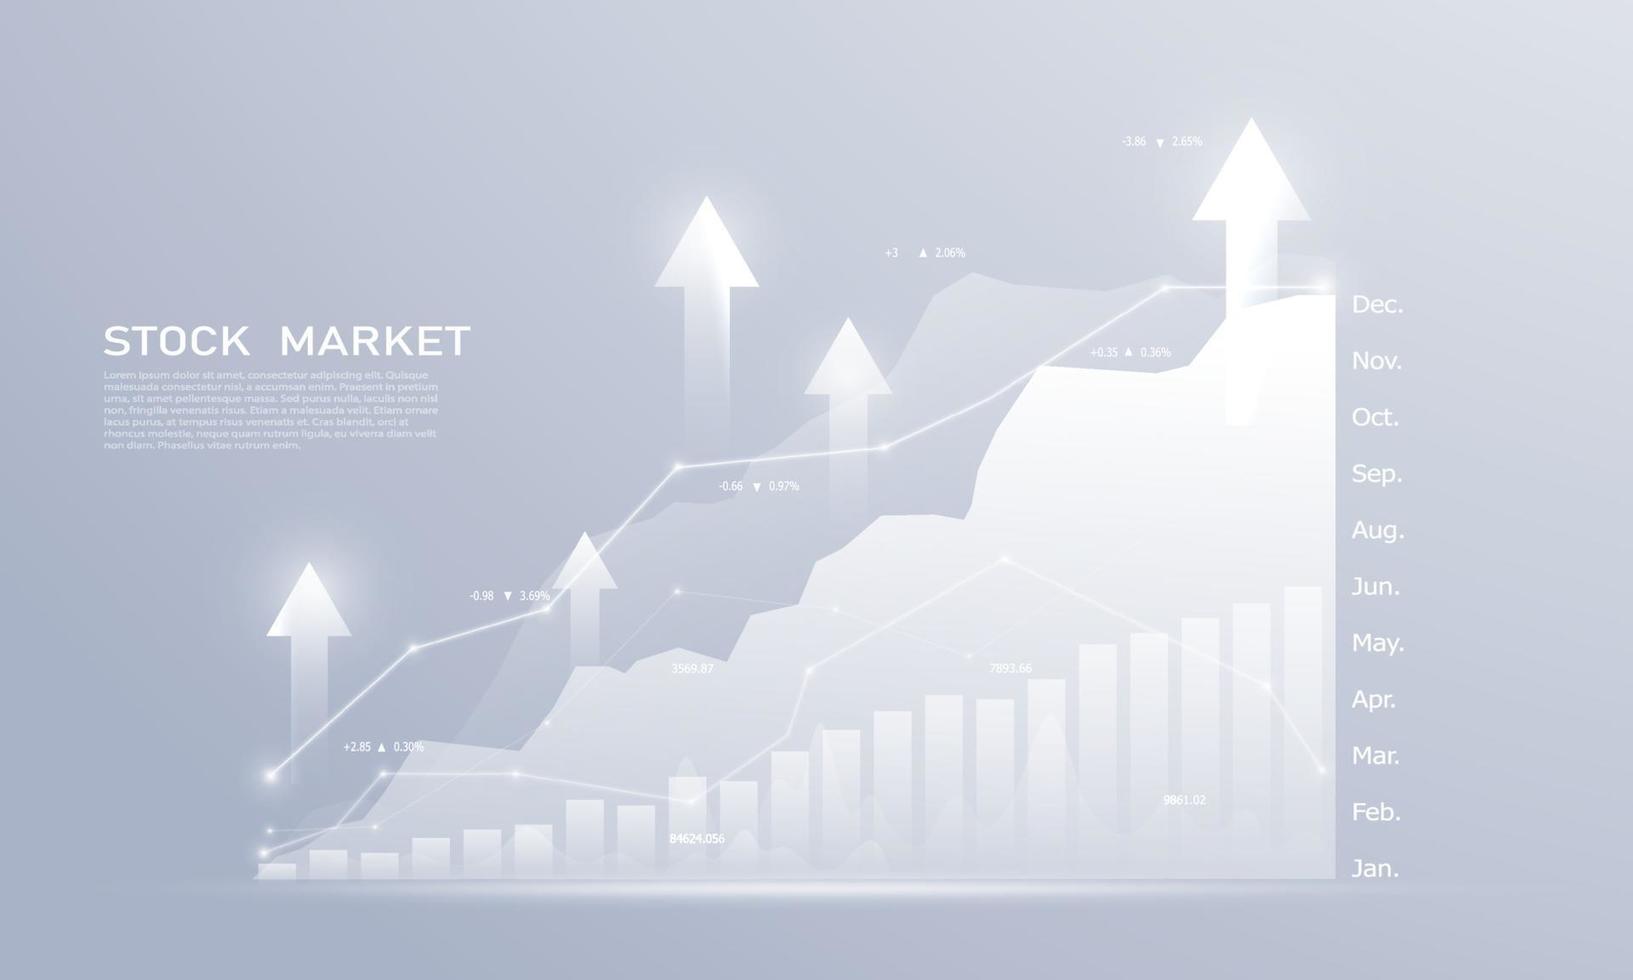 aktiemarknad, ekonomisk graf med diagram, affärs- och finansiella begrepp och rapporter, abstrakt teknikkommunikationskonceptbakgrund vektor